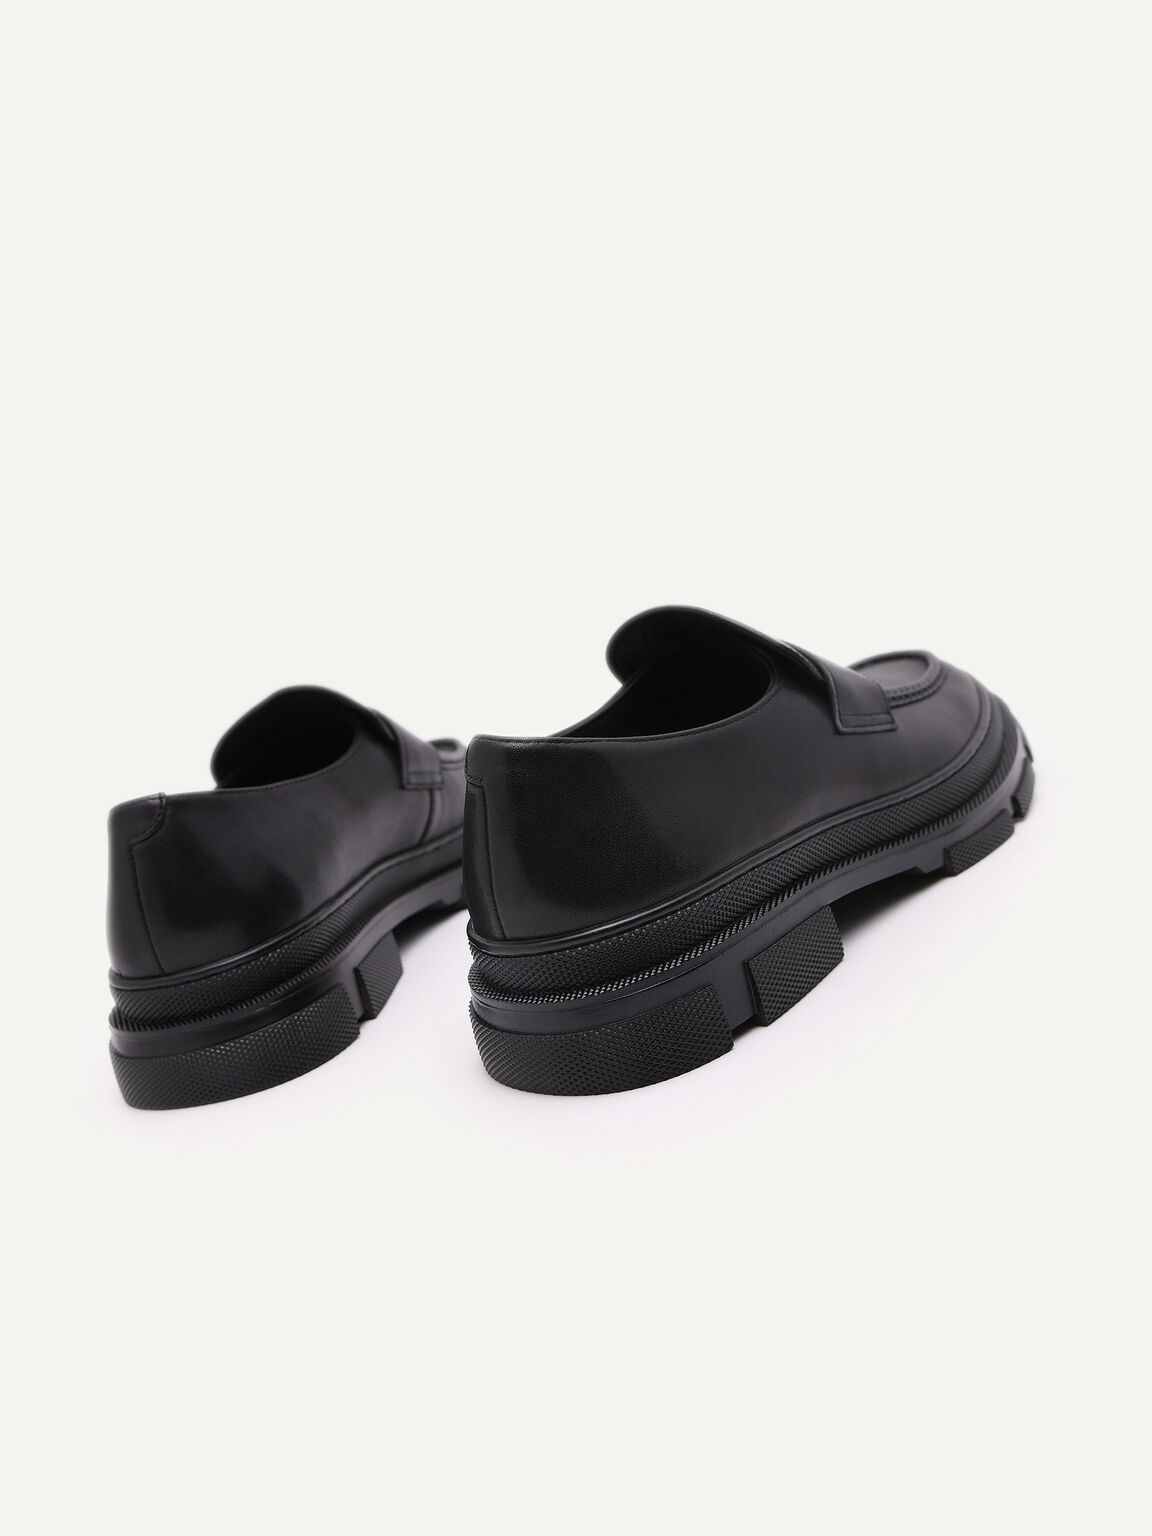 厚底皮革樂福鞋, 黑色